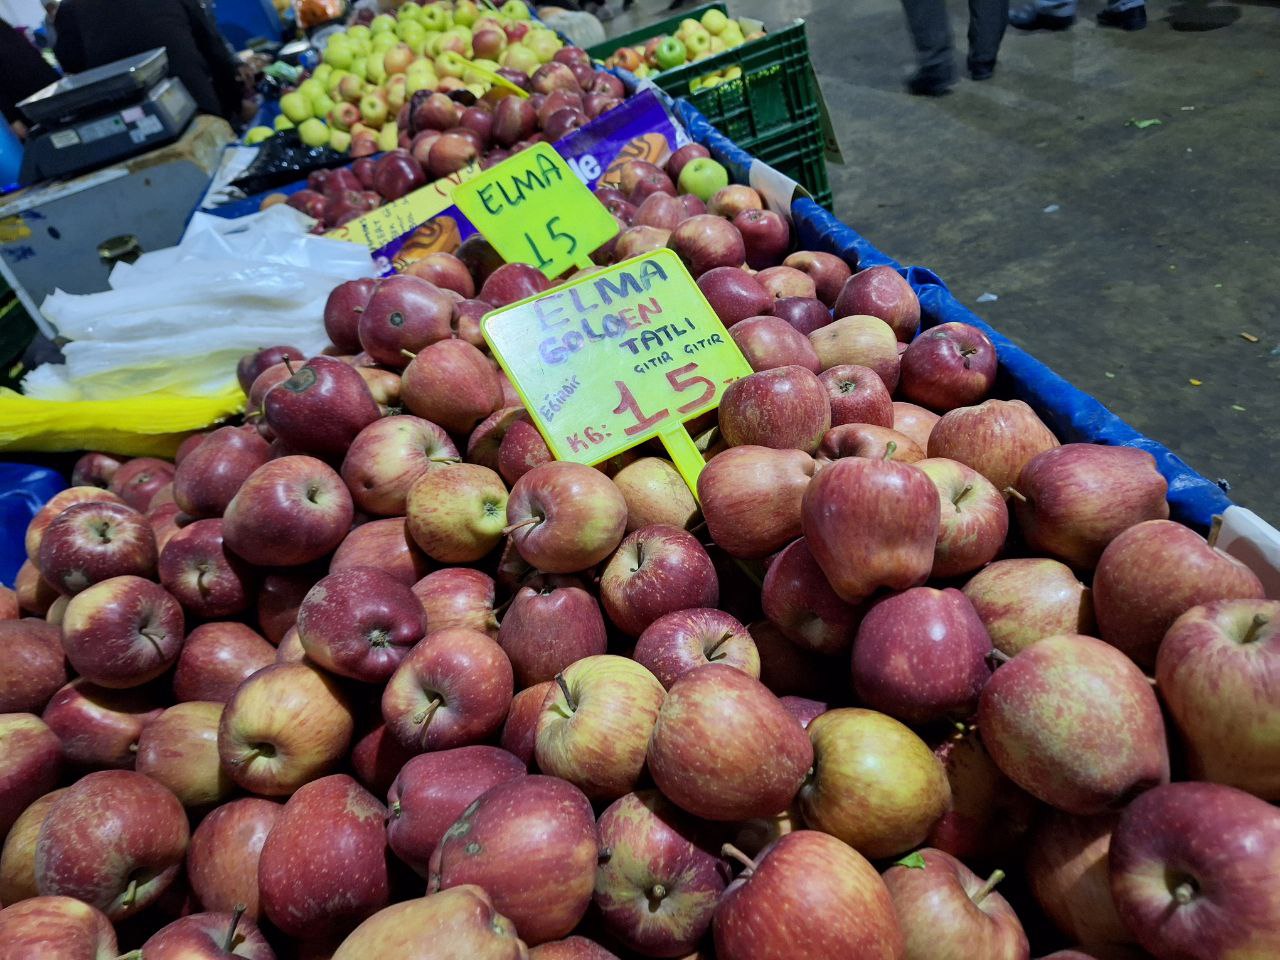 bucak halk pazarı elma fiyatları